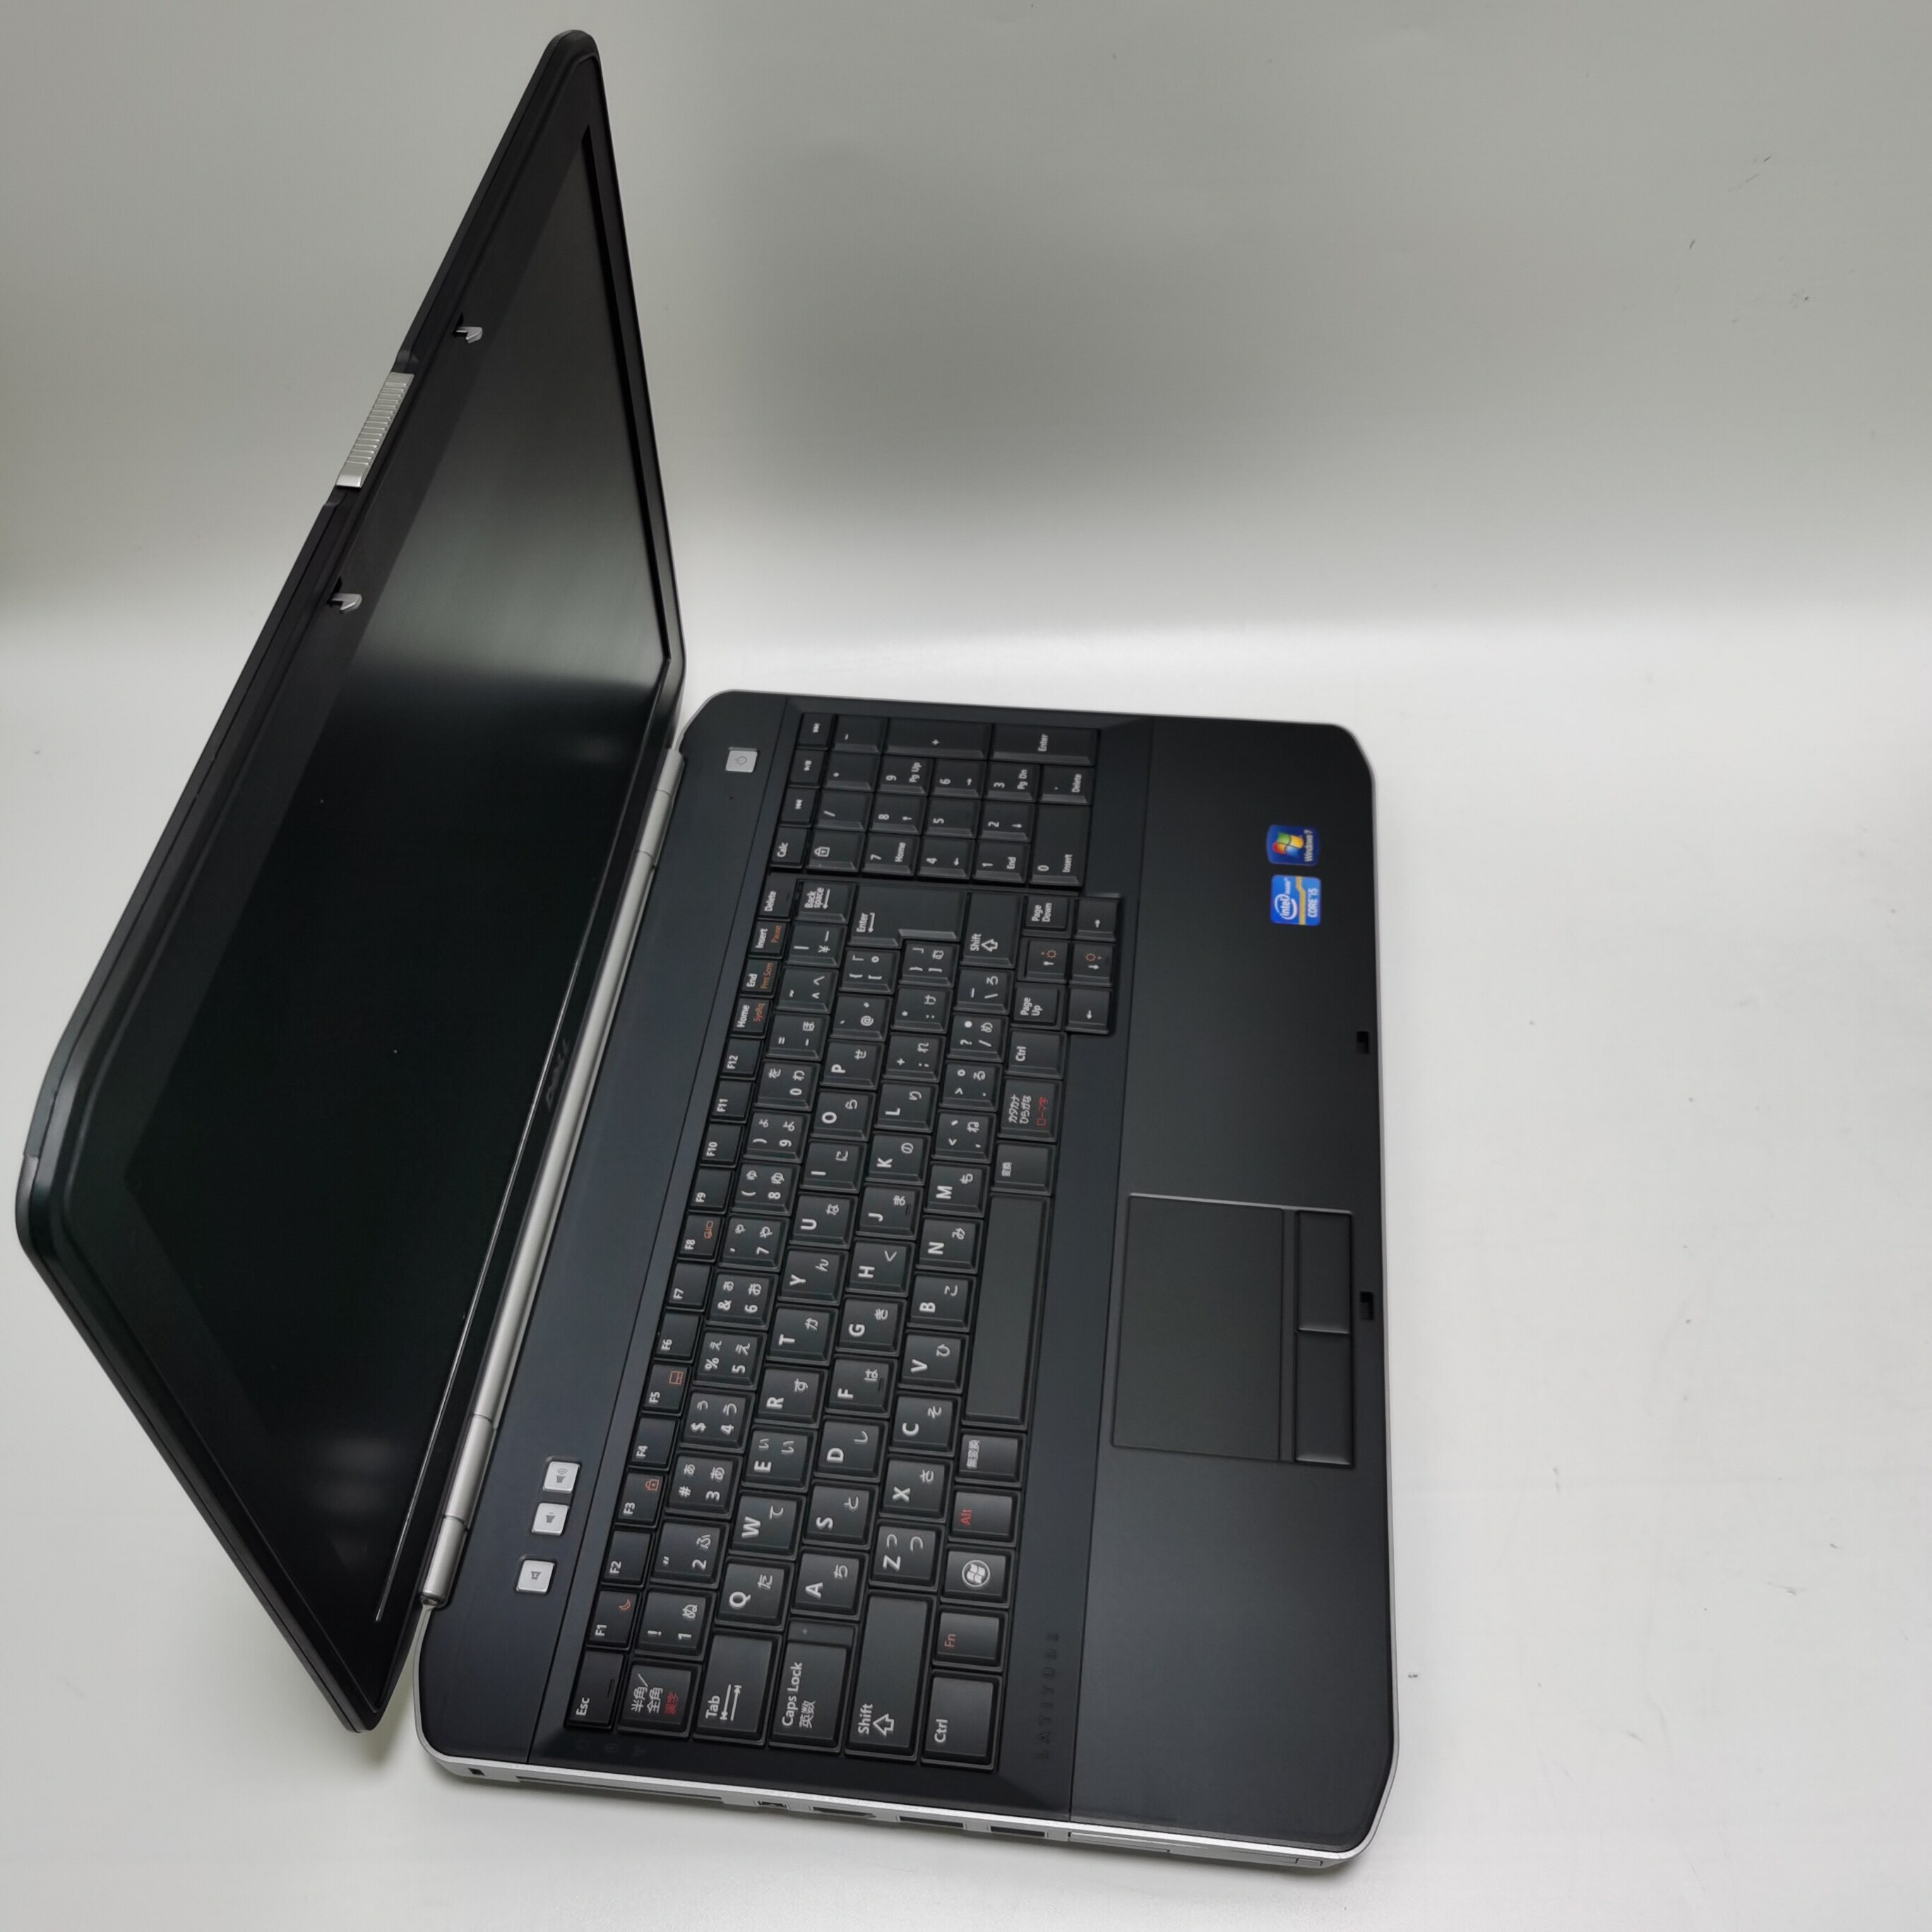 คำอธิบายเพิ่มเติมเกี่ยวกับ โน๊ตบุ๊ค notebook Dell E5530 i5 gen3 15.6 inch  //  Lenovo ThinkPad  M14 โน๊ตบุ๊คมือสอง  โน๊ตบุ๊คถูกๆๆ  คอมพิวเตอร์  คอม  laptop pc